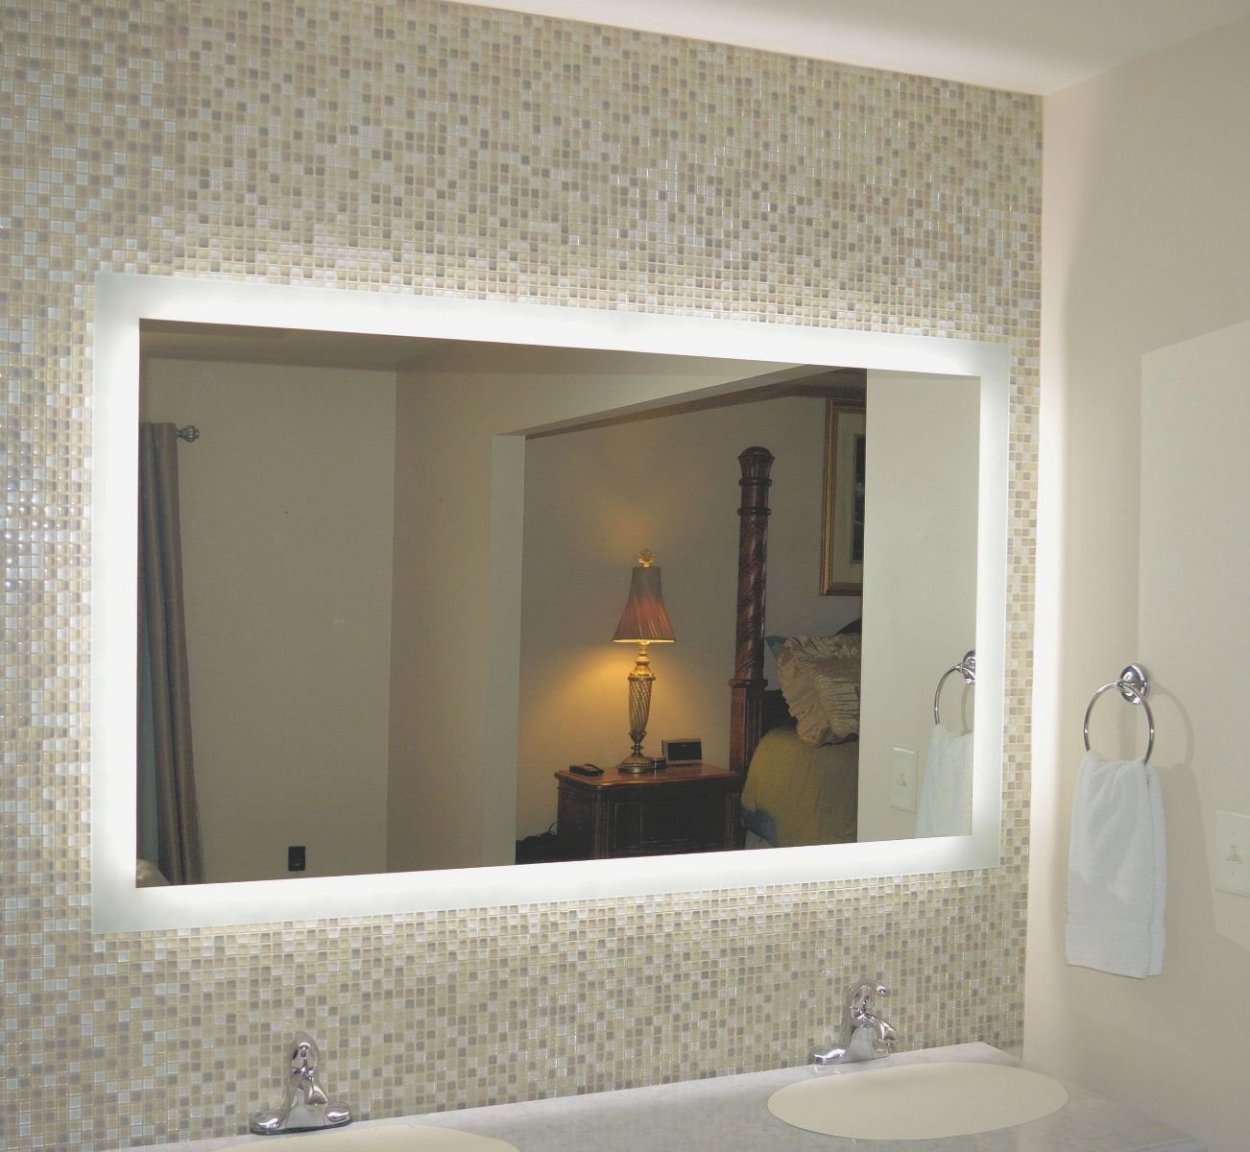 Gương phòng tắm TPHCM bản lớn.